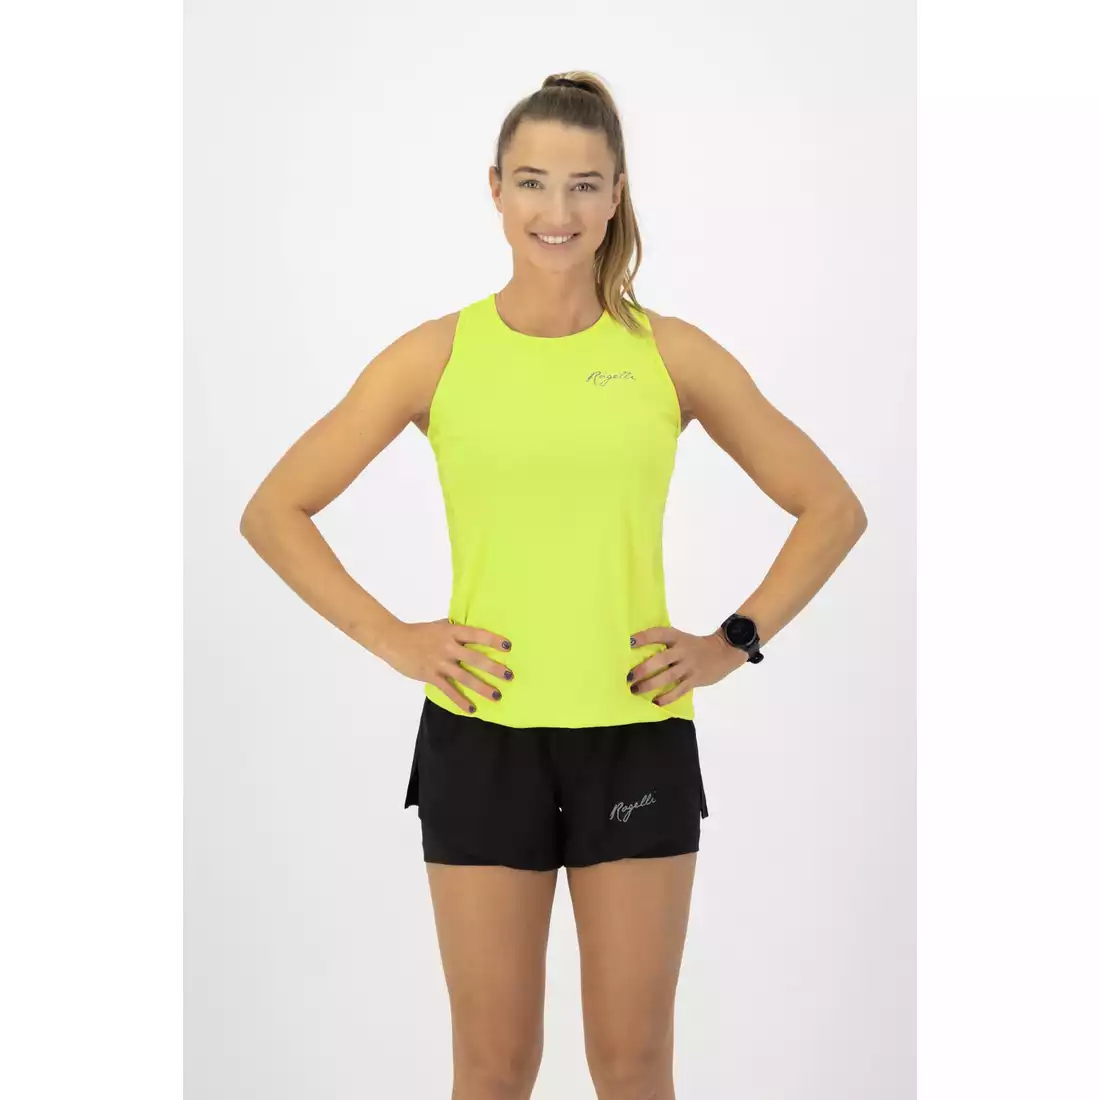 Rogelli CORE dámská běžecká vesta, fluorová žlutá